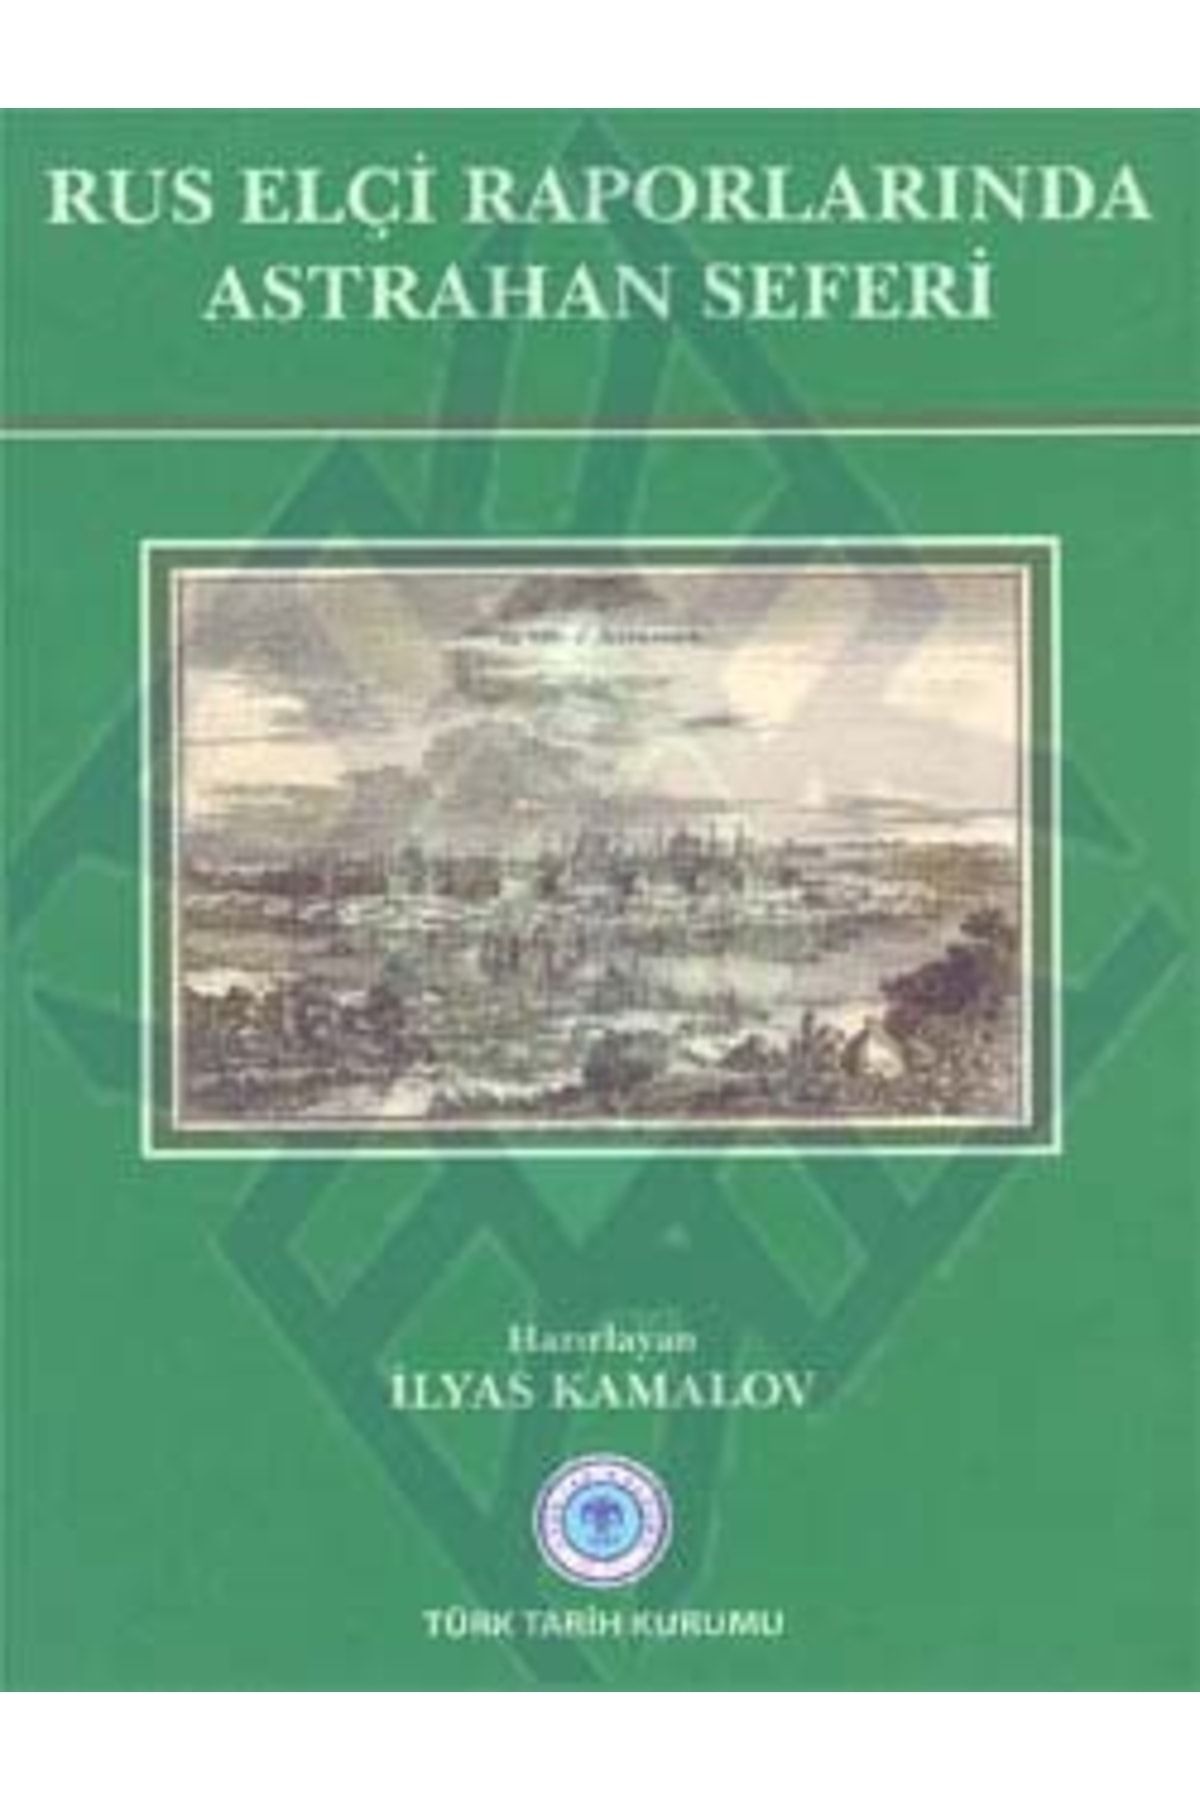 Türk Tarih Kurumu Yayınları Rus Elçi Raporlarında Astrahan Seferi, 2011